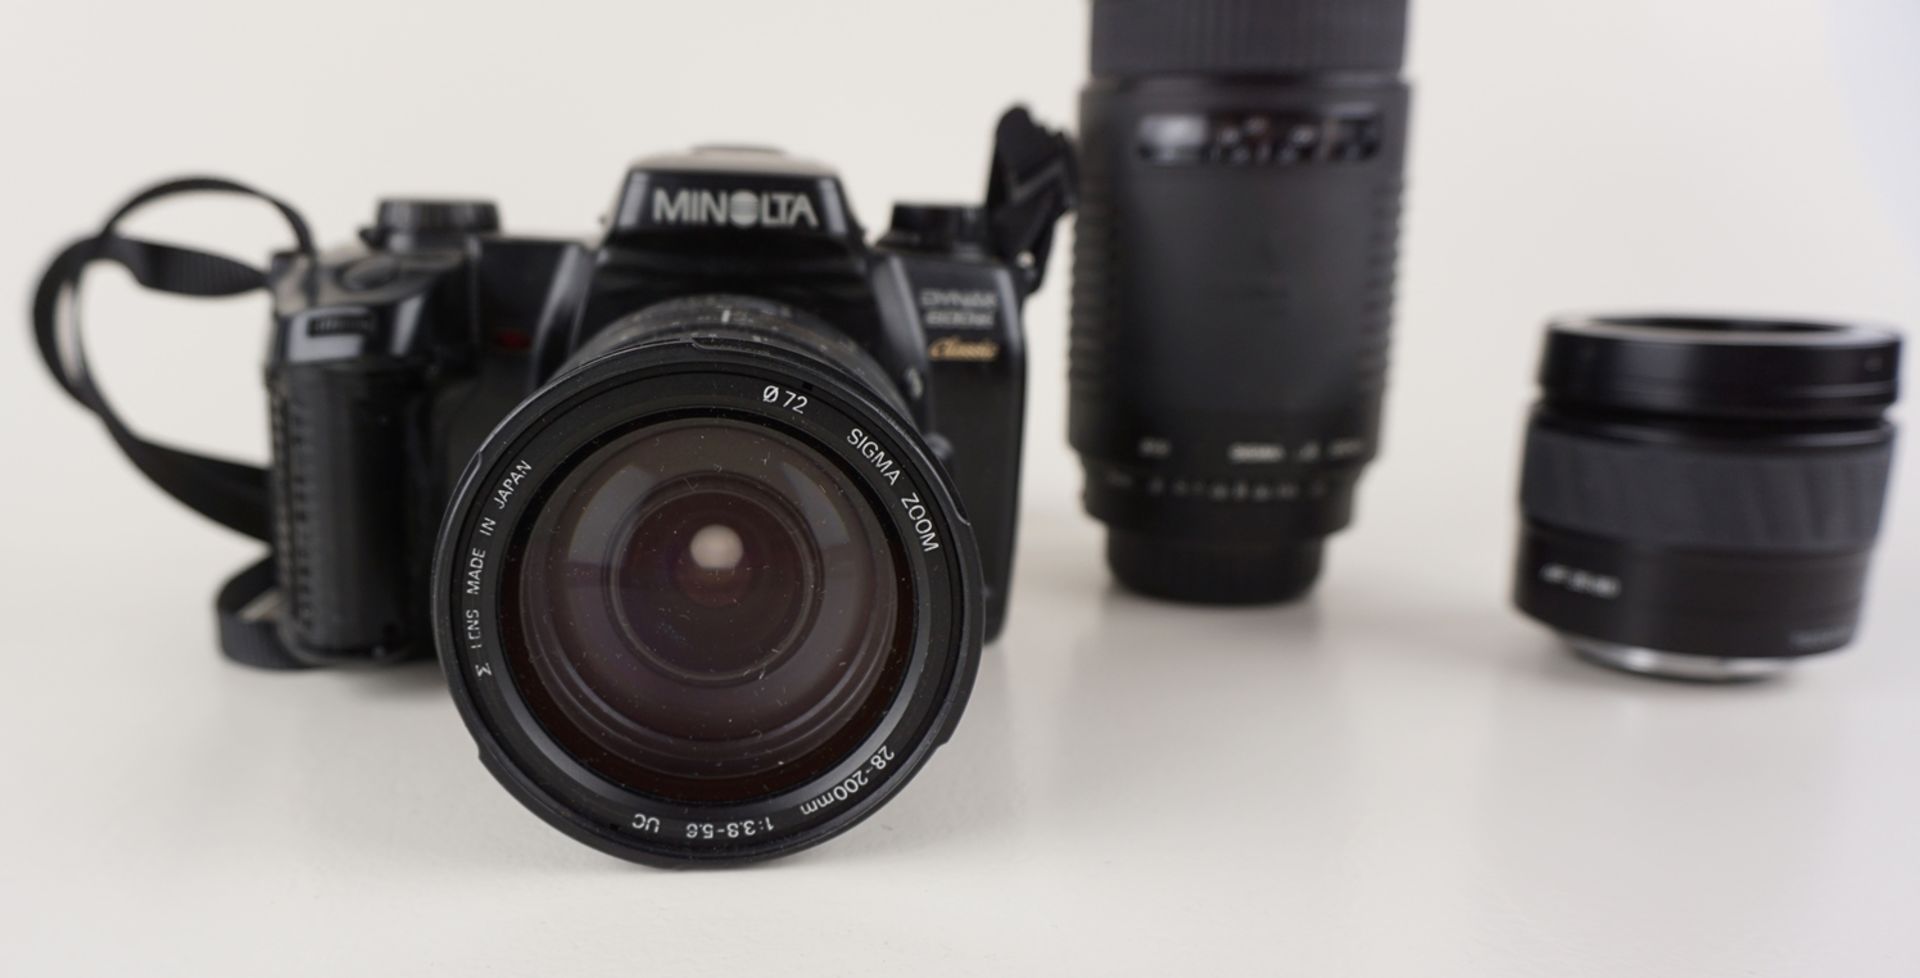 Spiegelreflexkamera Minolta Dynax 600si mit 3 Objektiven - Image 2 of 2